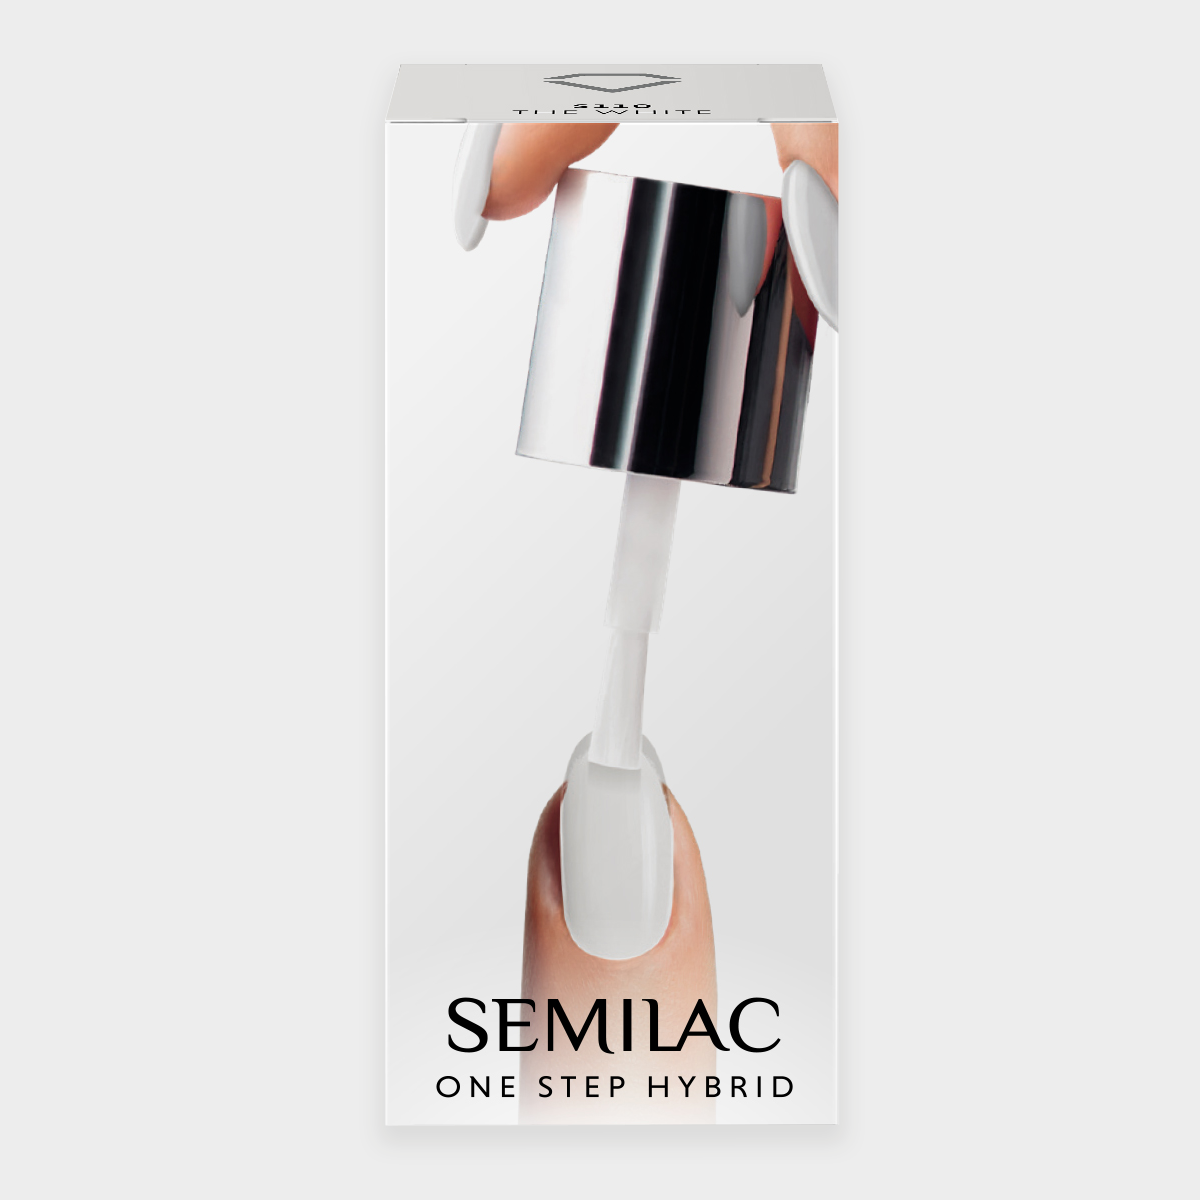 Semilac One Step Hybrid Starter Set CUSTOMISED with 24/15W Lamp - Semilac UK